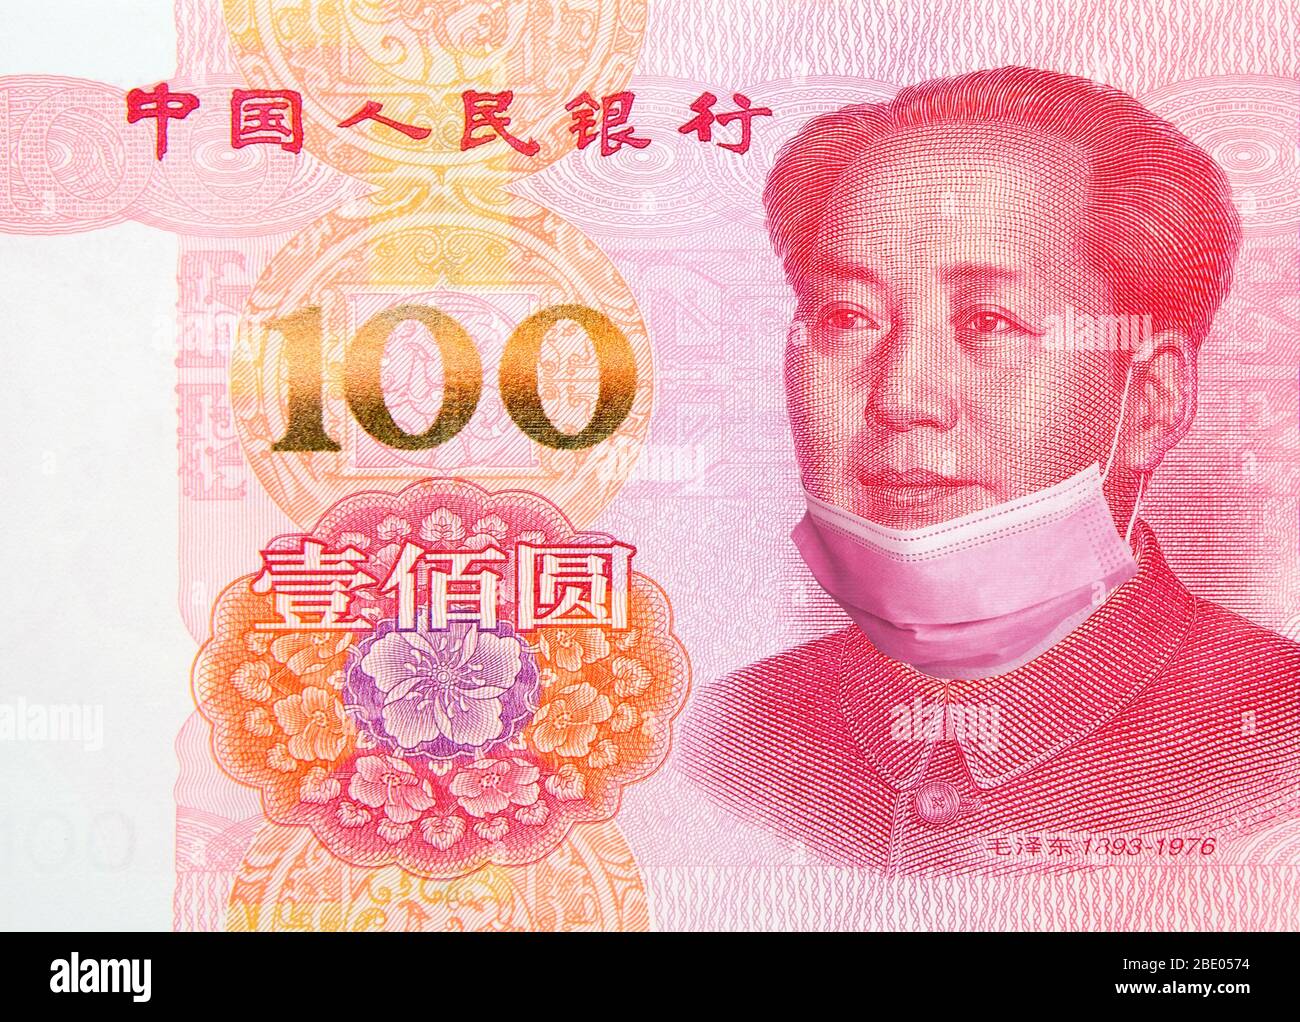 China está poniendo fin al bloqueo y cuarentena del coronavirus. Billete de 100 Yuan con máscara hacia abajo. China restringe las restricciones a la recuperación económica Foto de stock